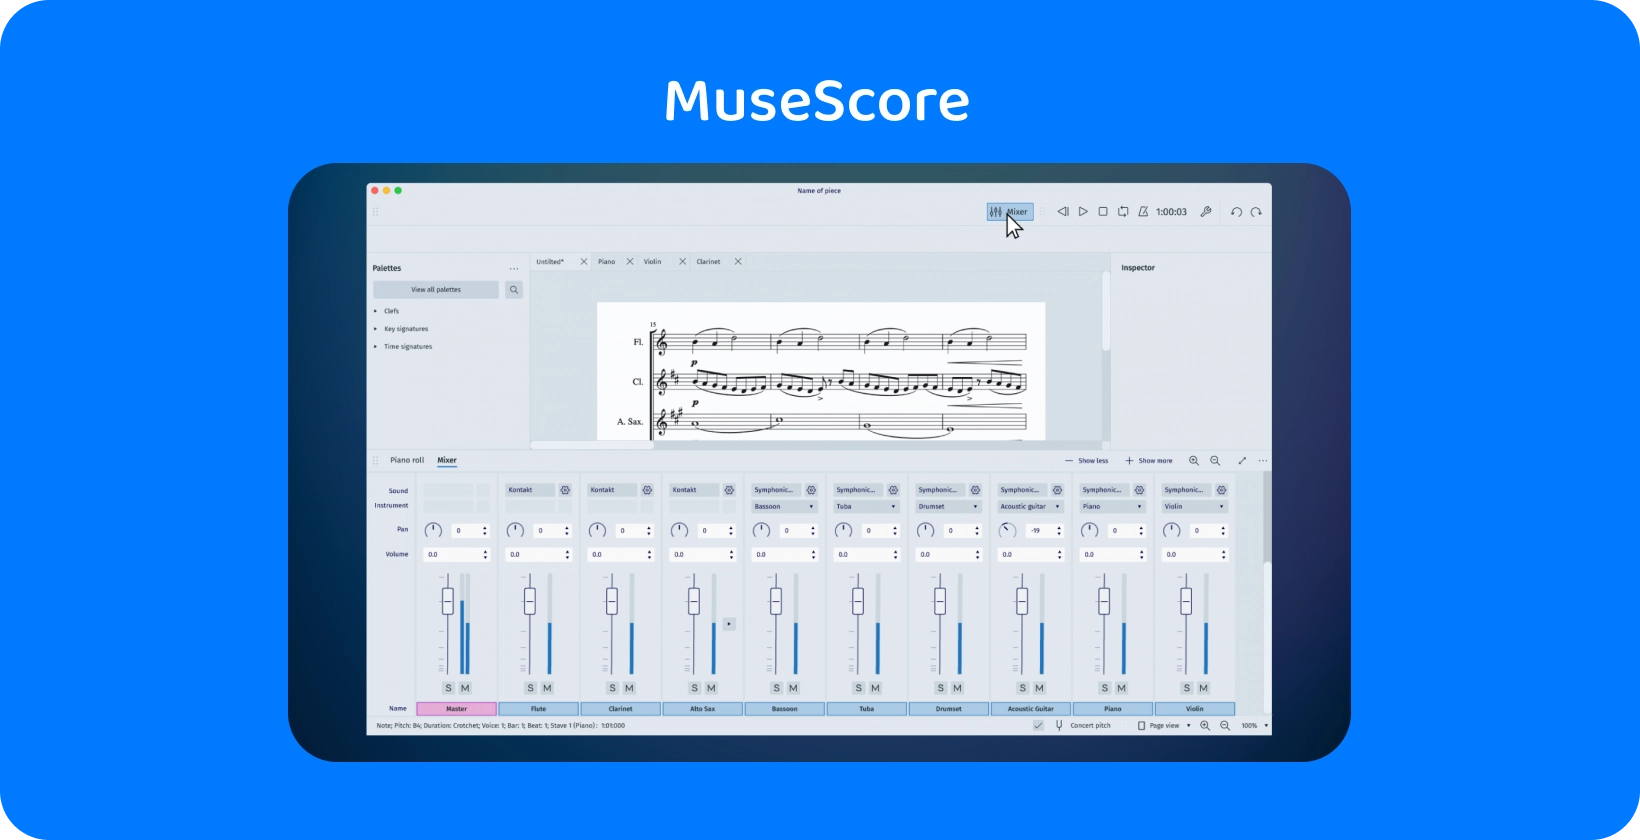 Die Benutzeroberfläche von MuseScore zeigt das Mixer-Tool für die Audiotranskription, das für Musikschaffende unerlässlich ist.